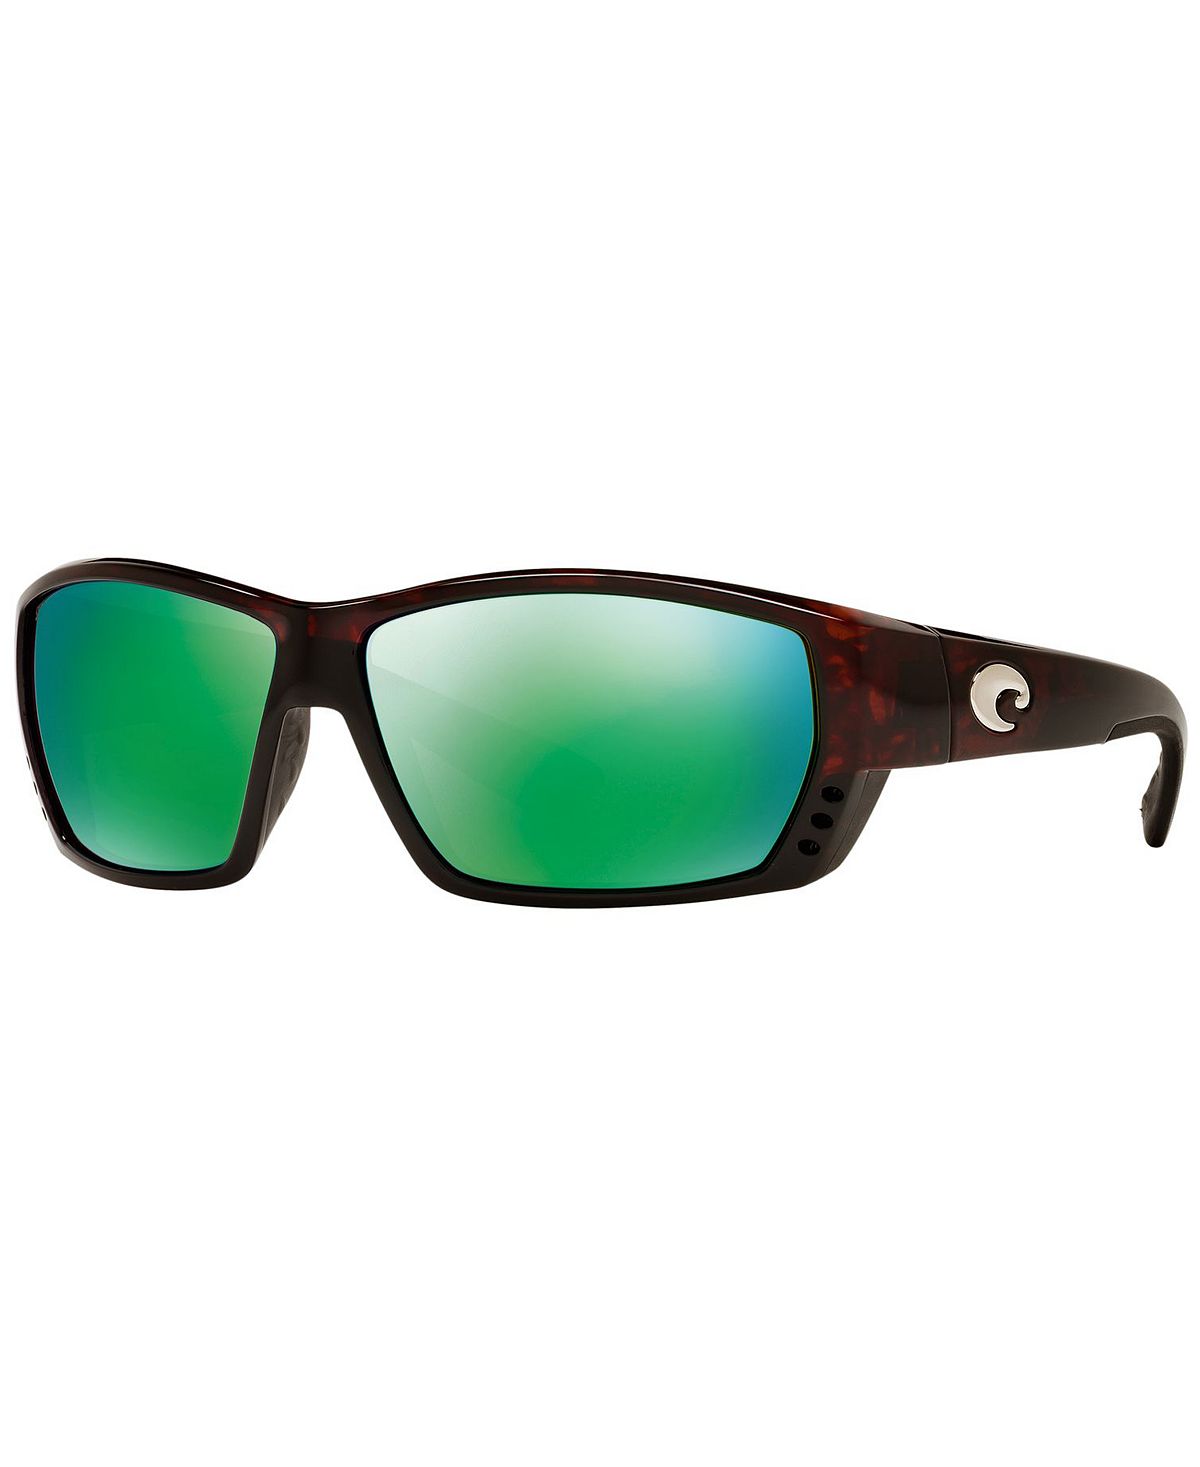 Поляризованные солнцезащитные очки, TUNA ALLEY Costa Del Mar